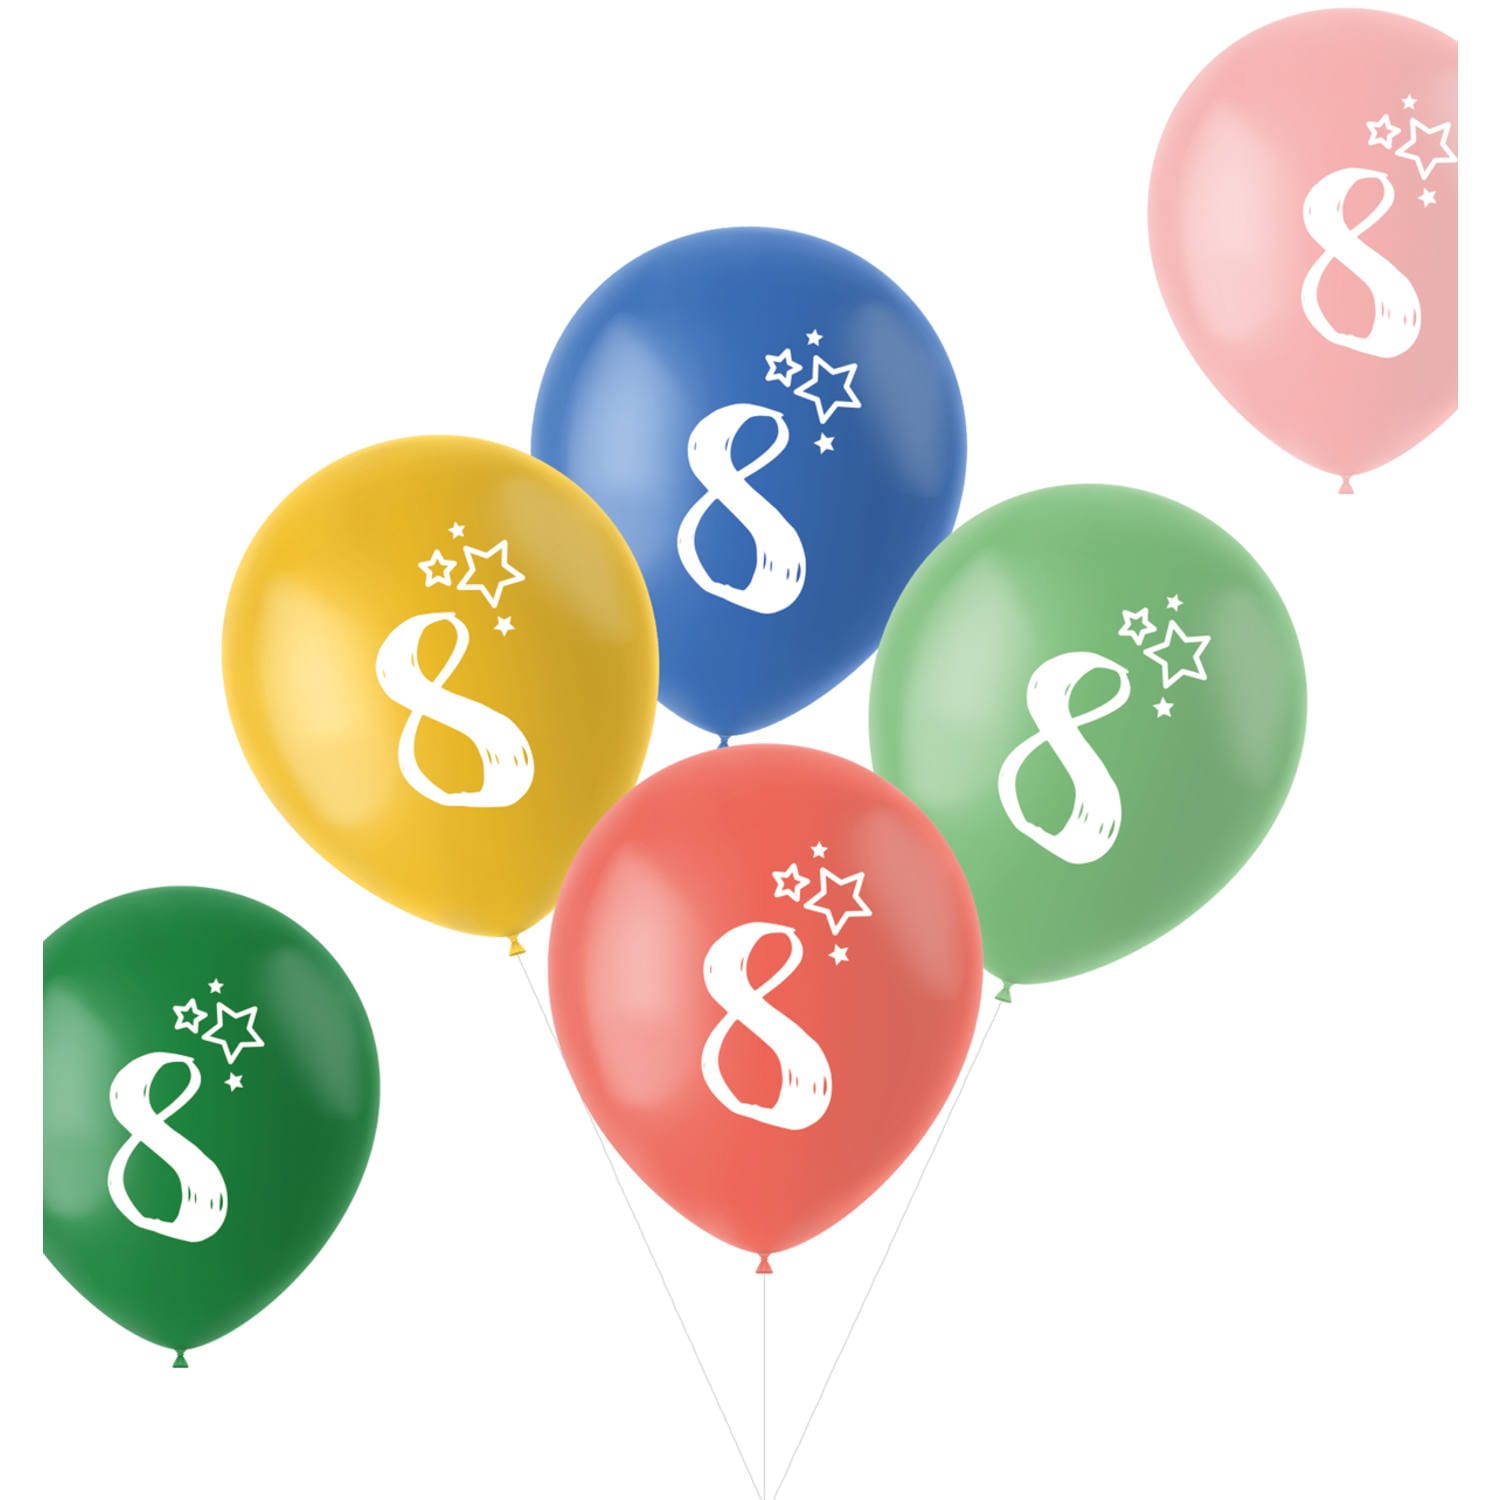 Sifferballonger 8 år, 6-pack